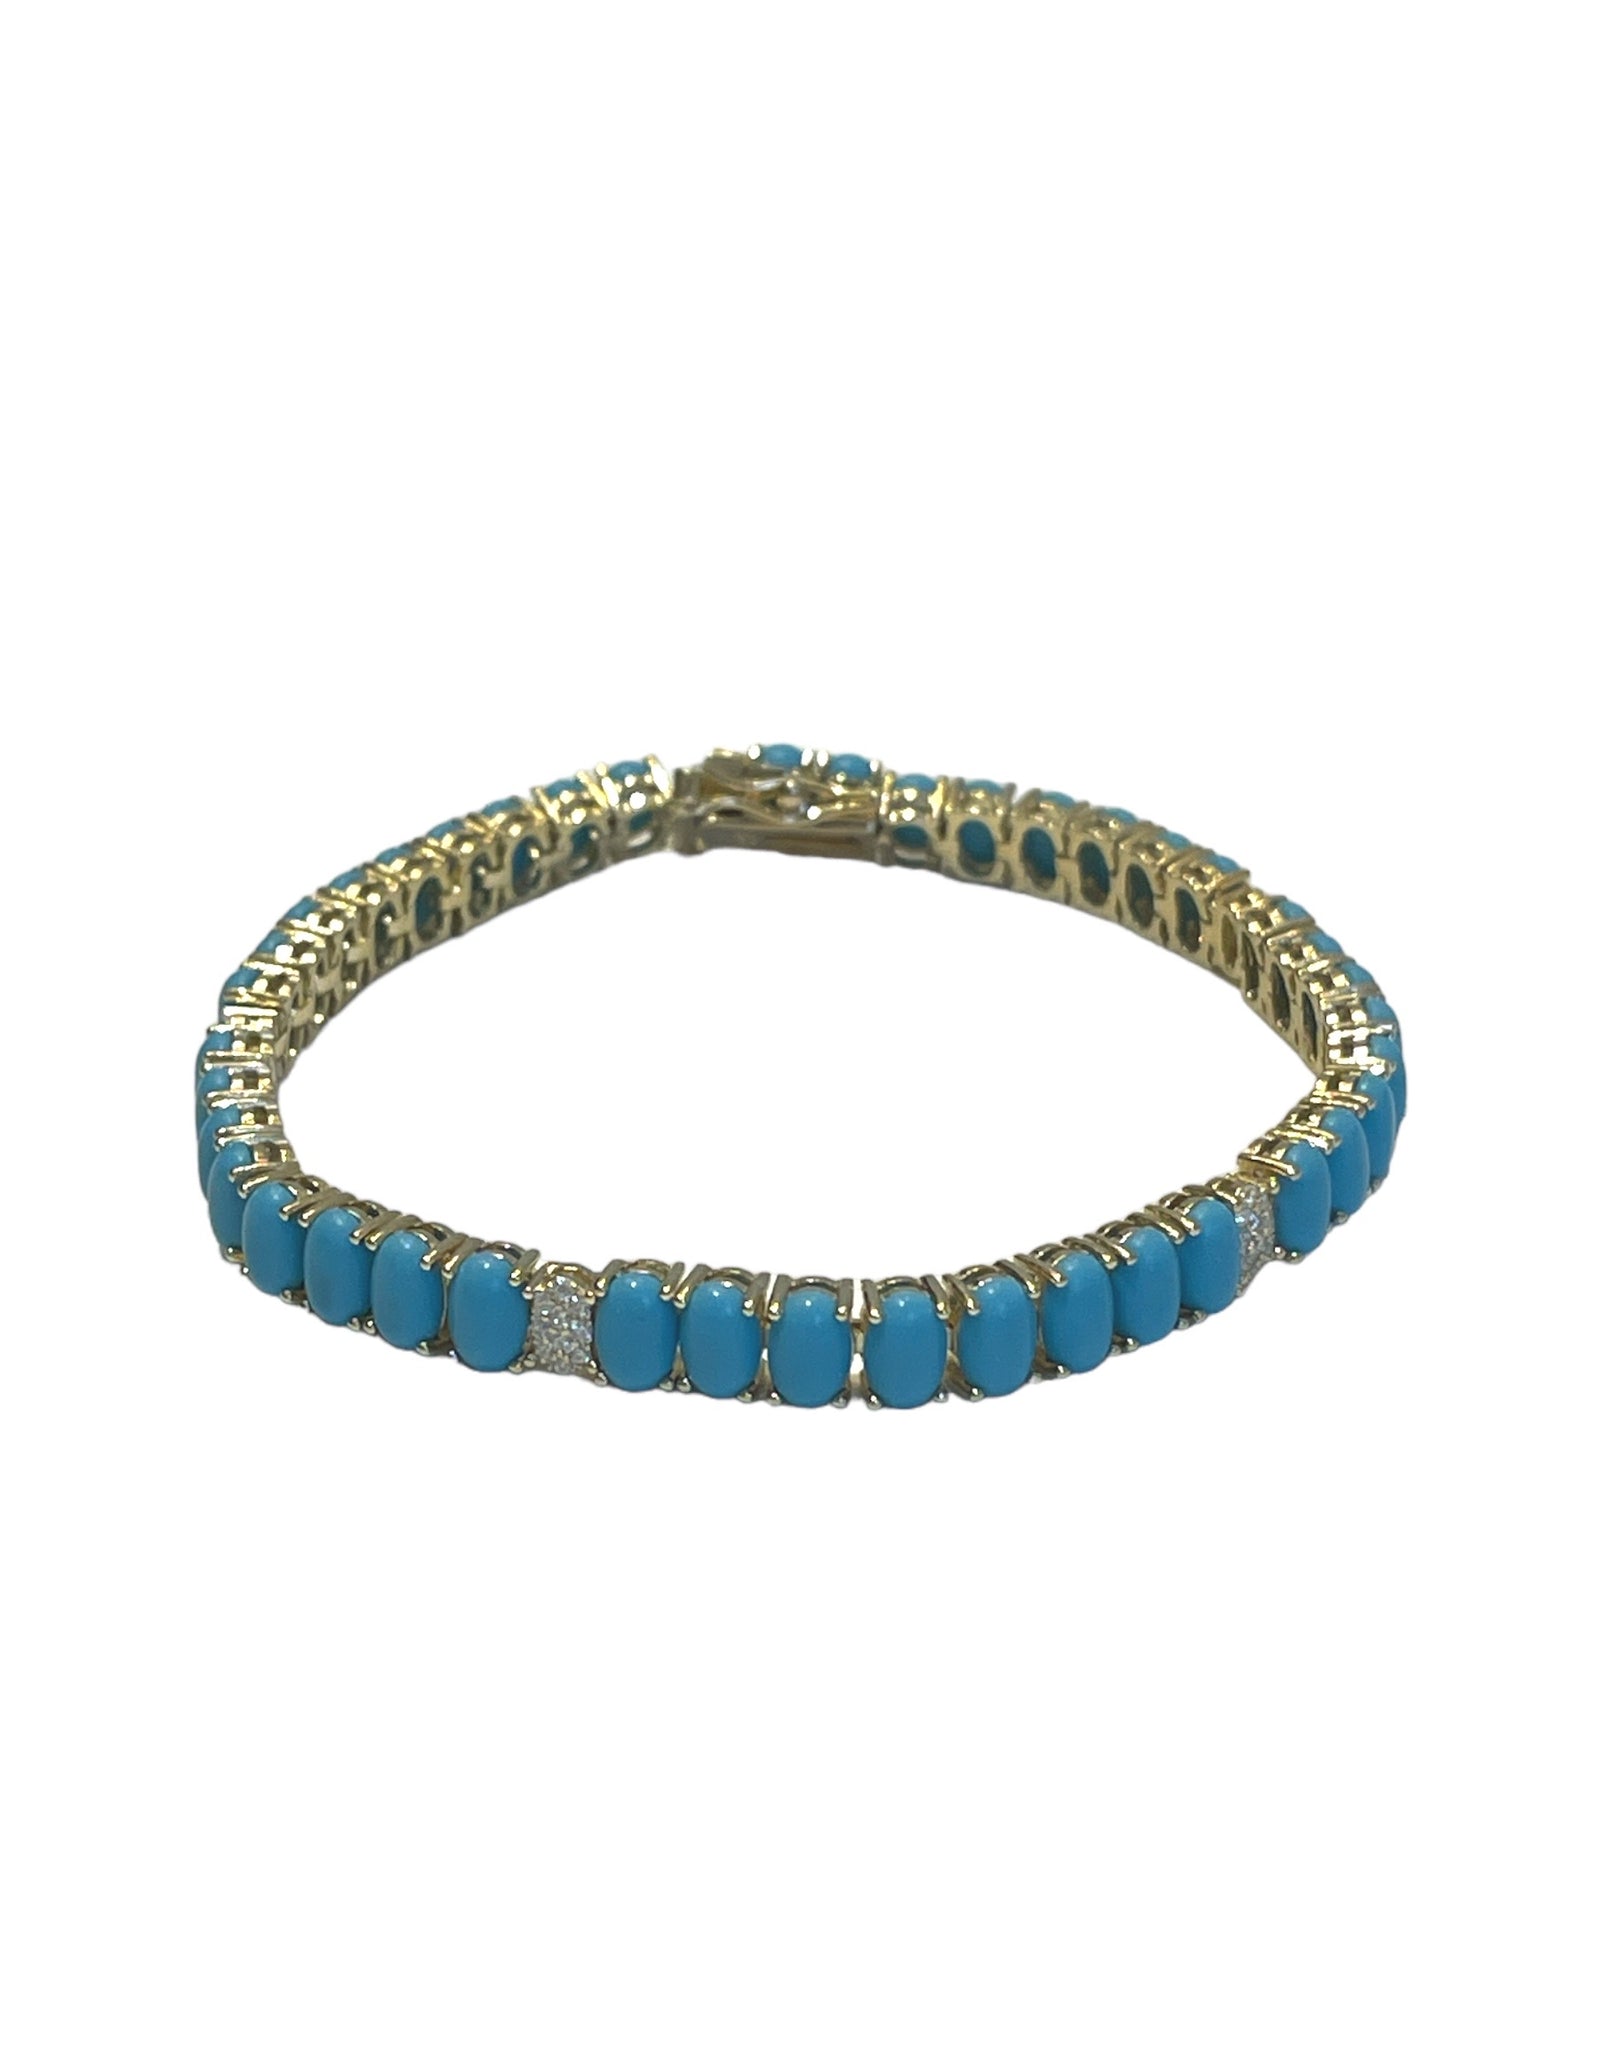 5mm Turquoise Cz Tennis Bracelet